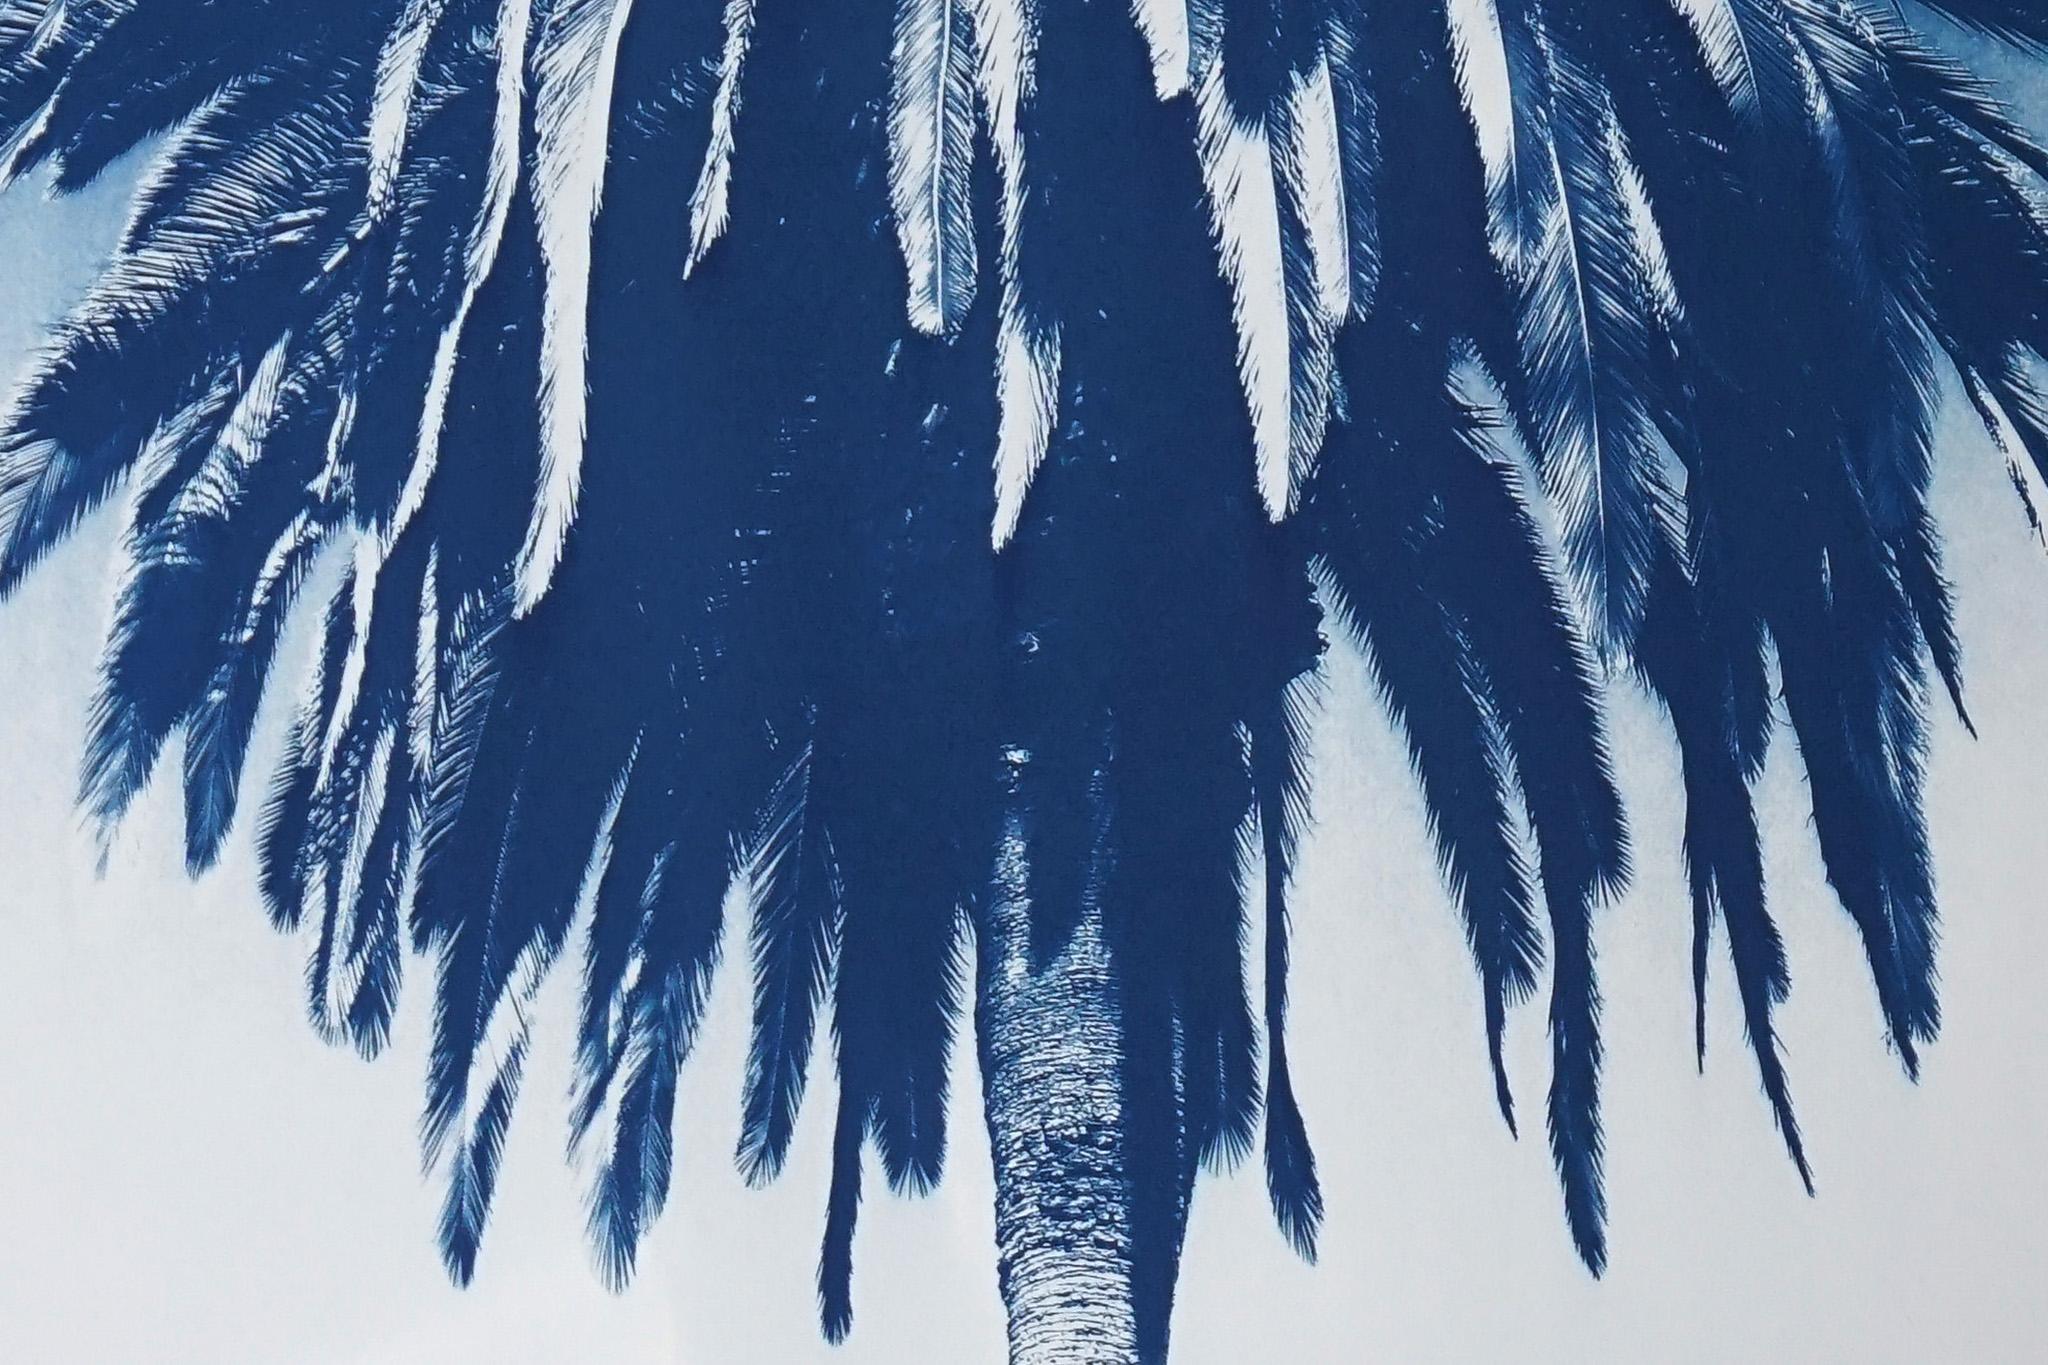 Dies ist eine exklusive handgedruckte Cyanotypie in limitierter Auflage.
Diese Cyanotypie zeigt eine Palme aus den Majorelle-Gärten in Marrakesch. 

Einzelheiten:
+ Titel: Marrakesch-Majorelle-Palme
+ Jahr: 2022
+ Auflagenhöhe: 50
+ Gestempelt und